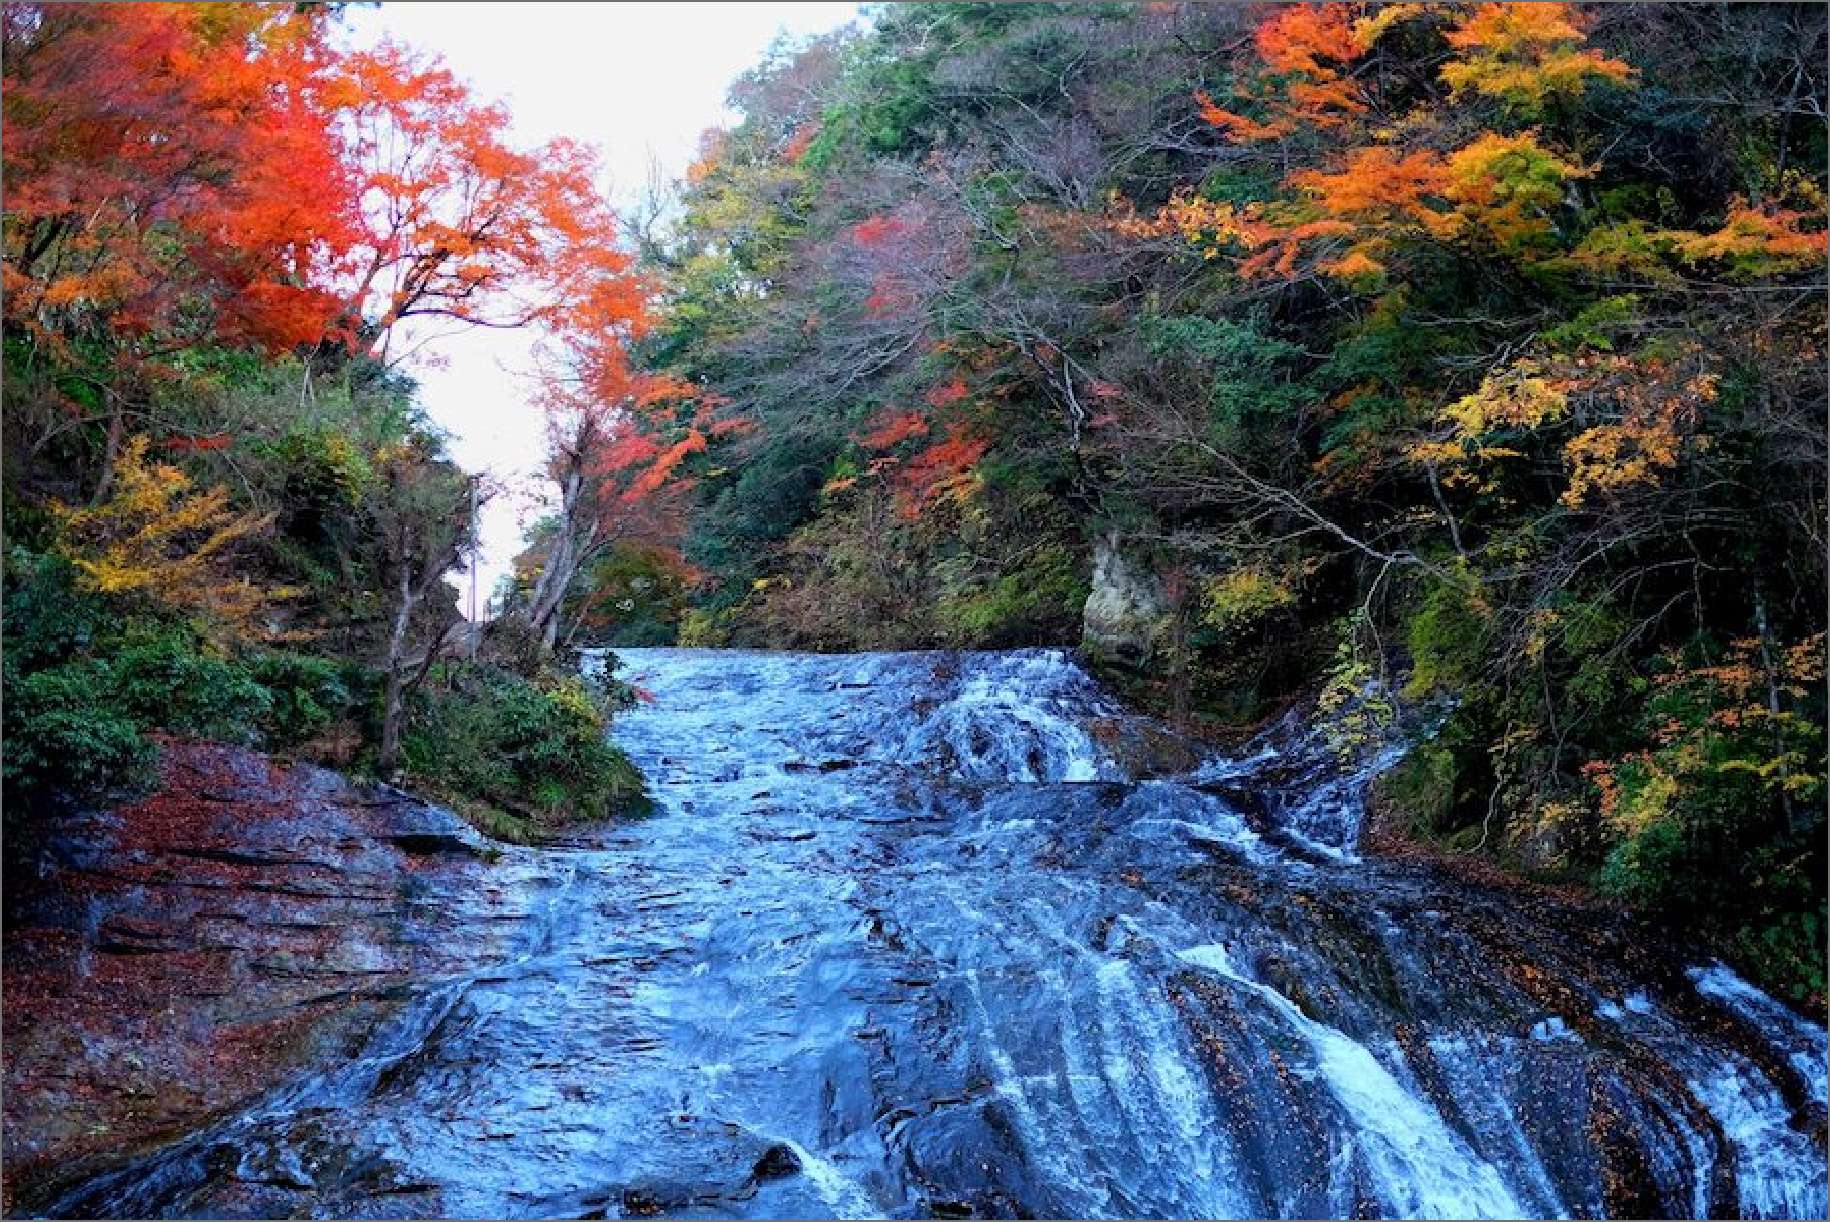 Yoro Gorge Autumn Foliage Tour